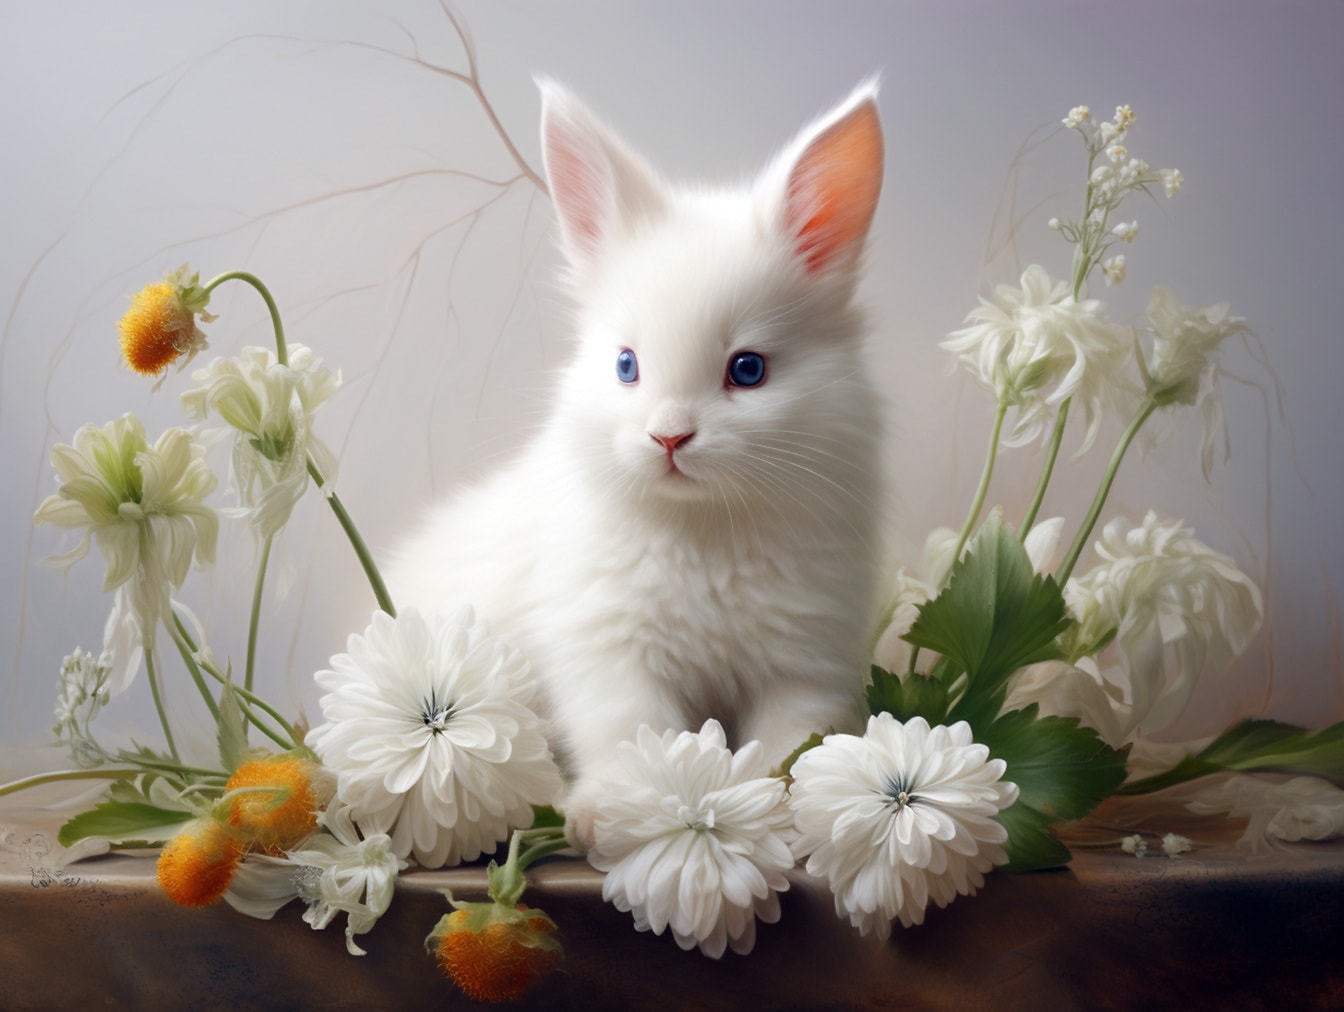 Chú thỏ trắng đáng yêu với đôi mắt xanh trong hoa